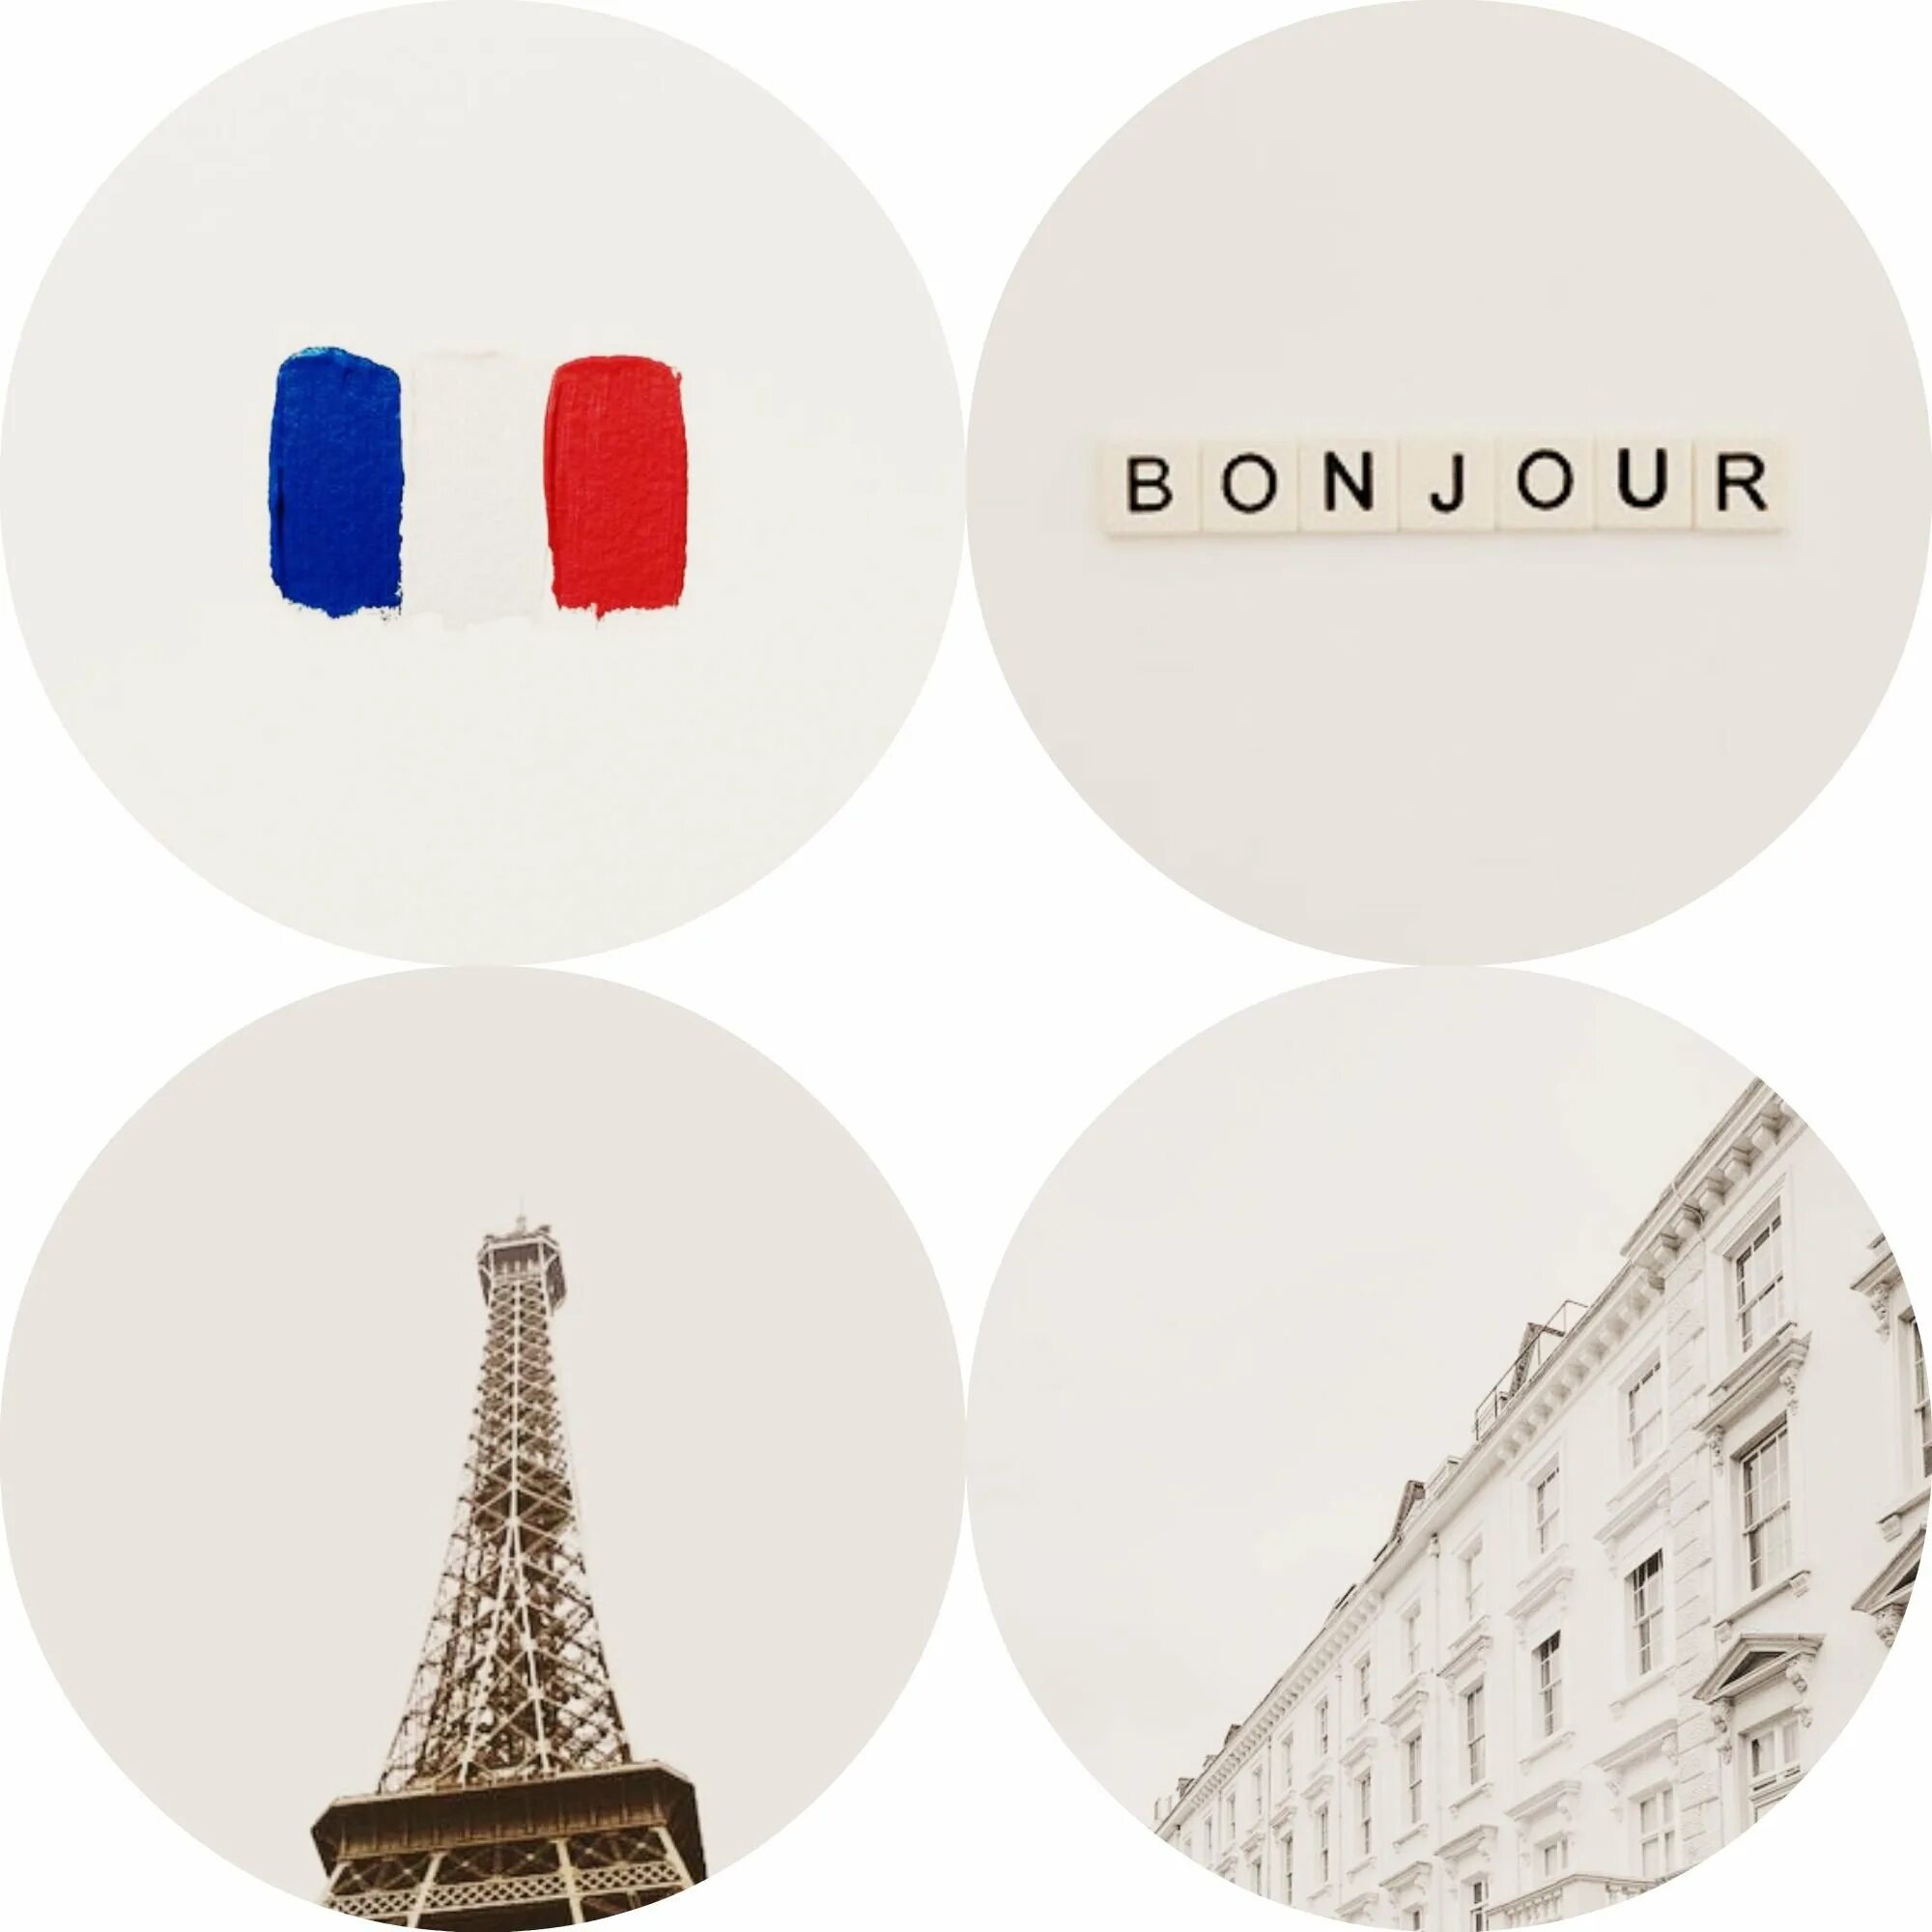 Века на французском языке. Париж Эстетика. Франция коллаж. Франция Эстетика. Эстетичный флаги Франции.